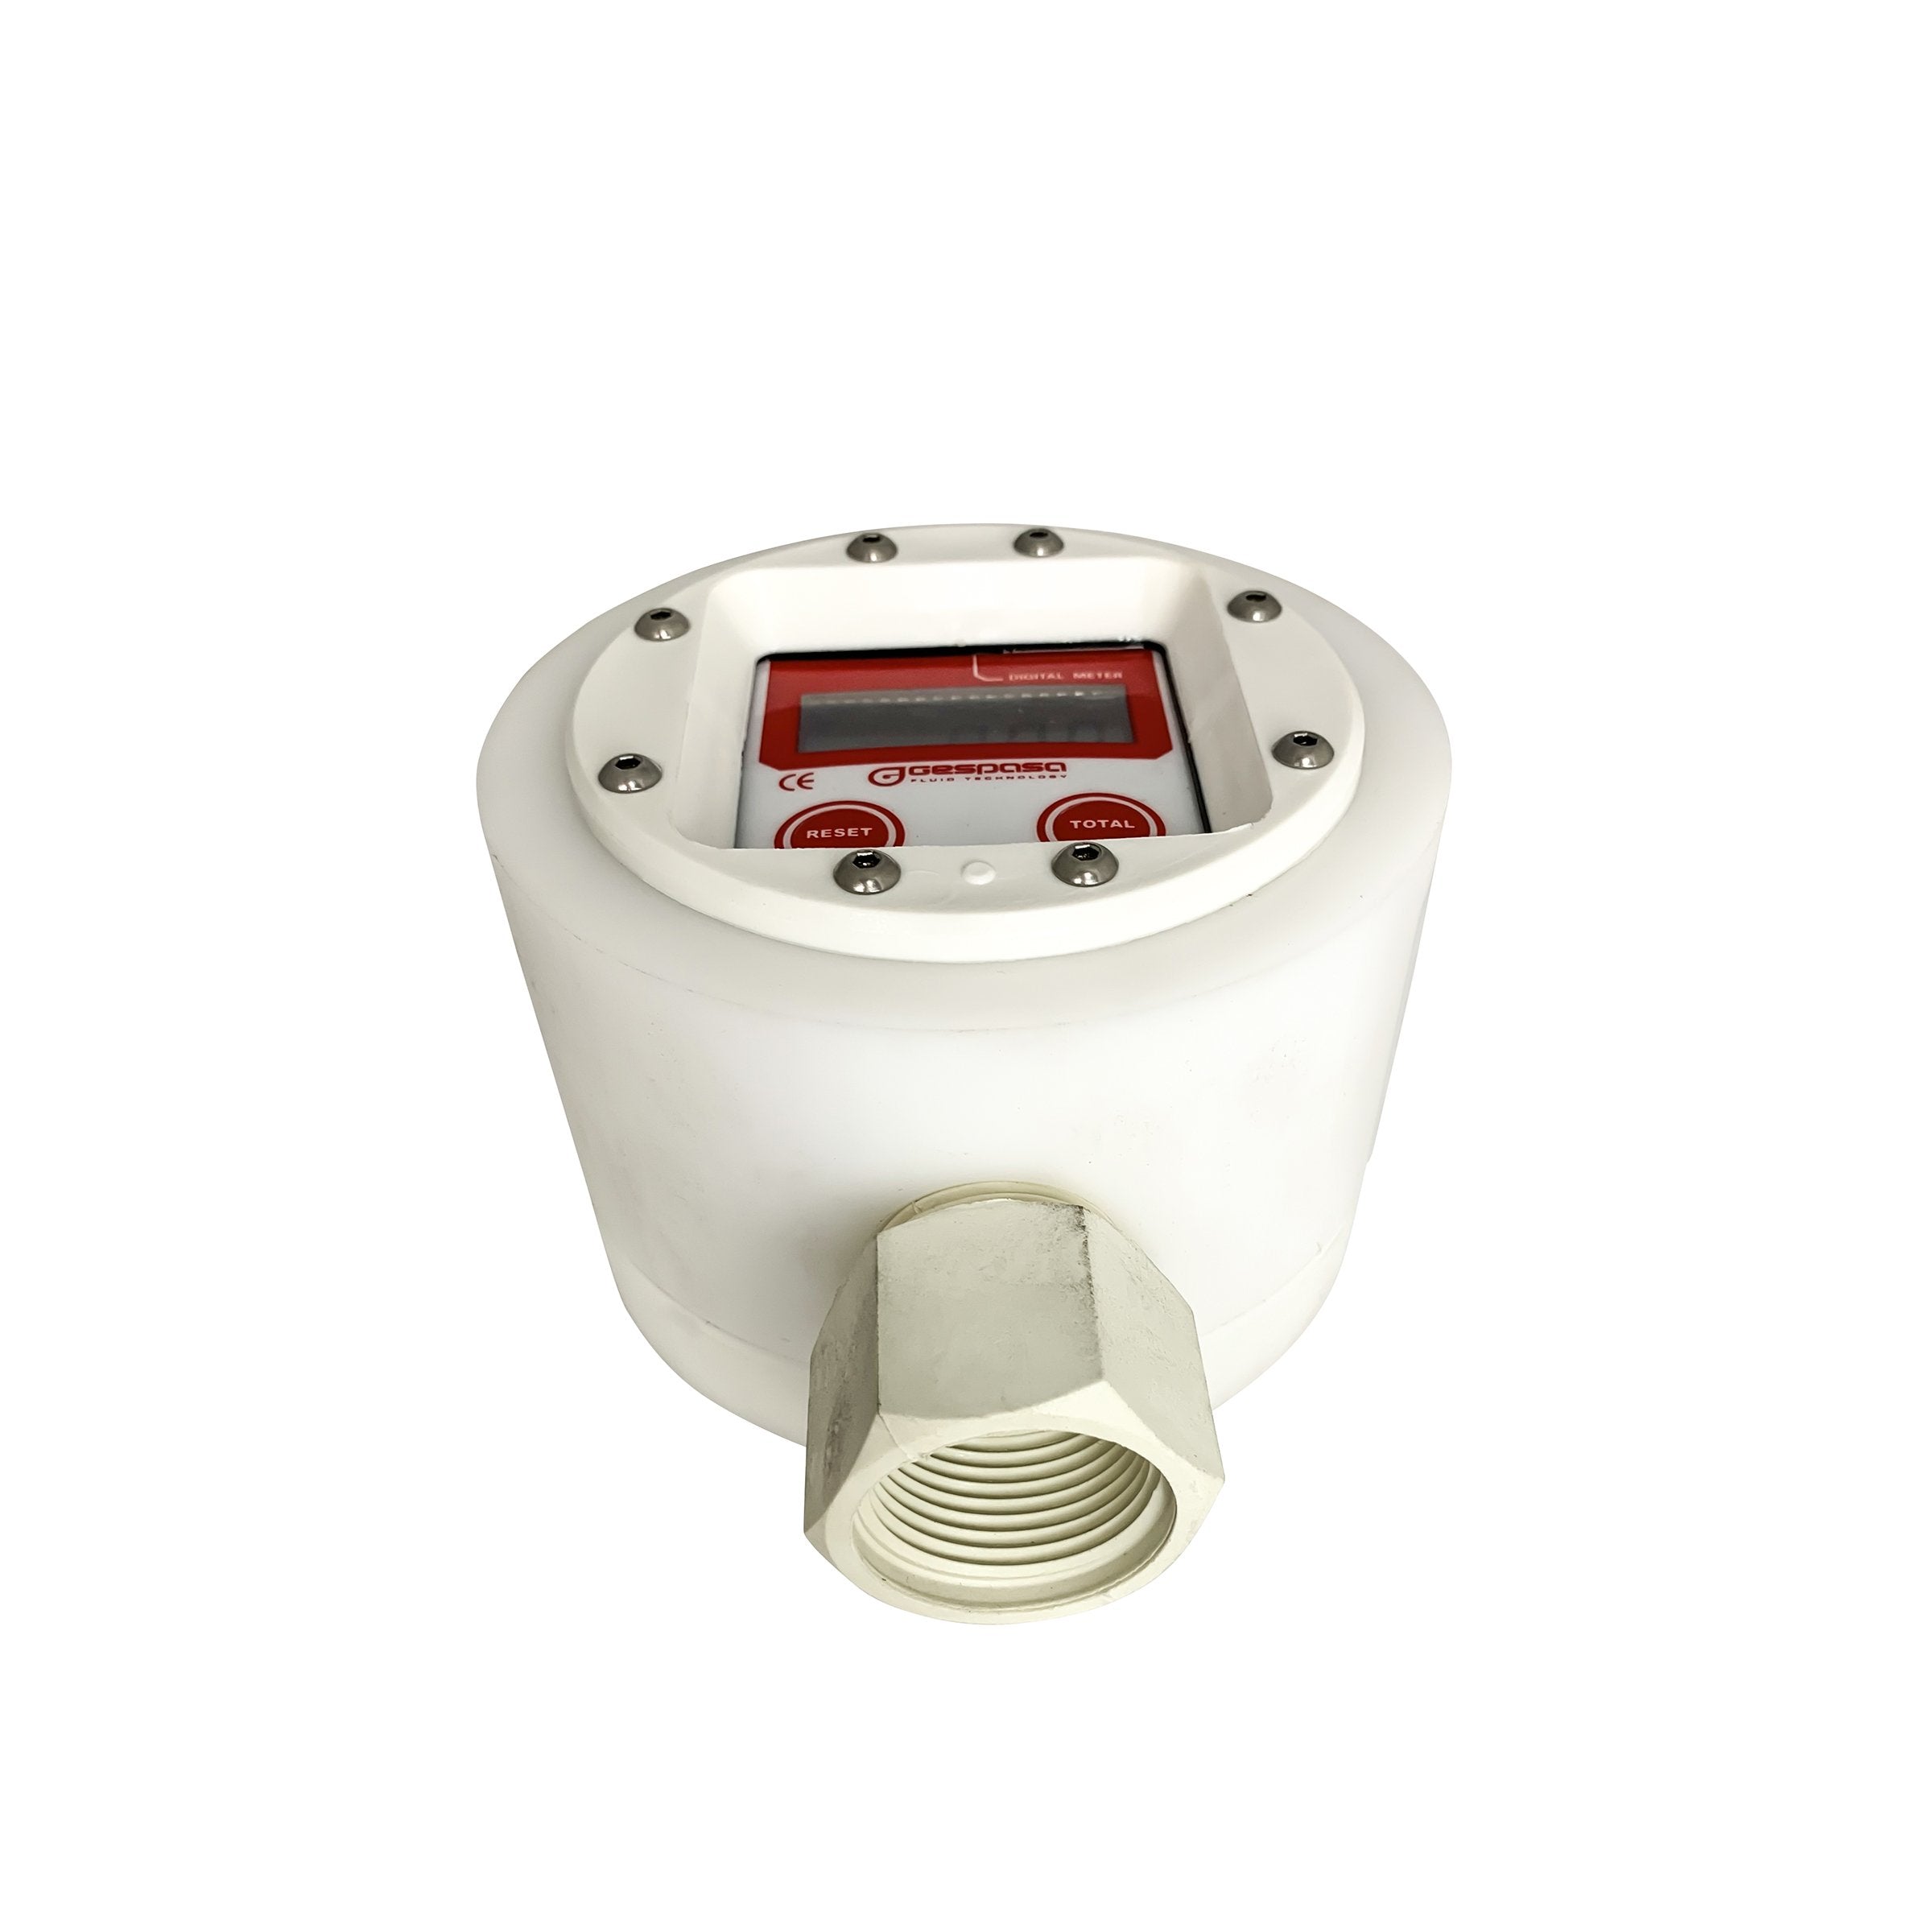 Adblue totaliser flow meter Gespasa